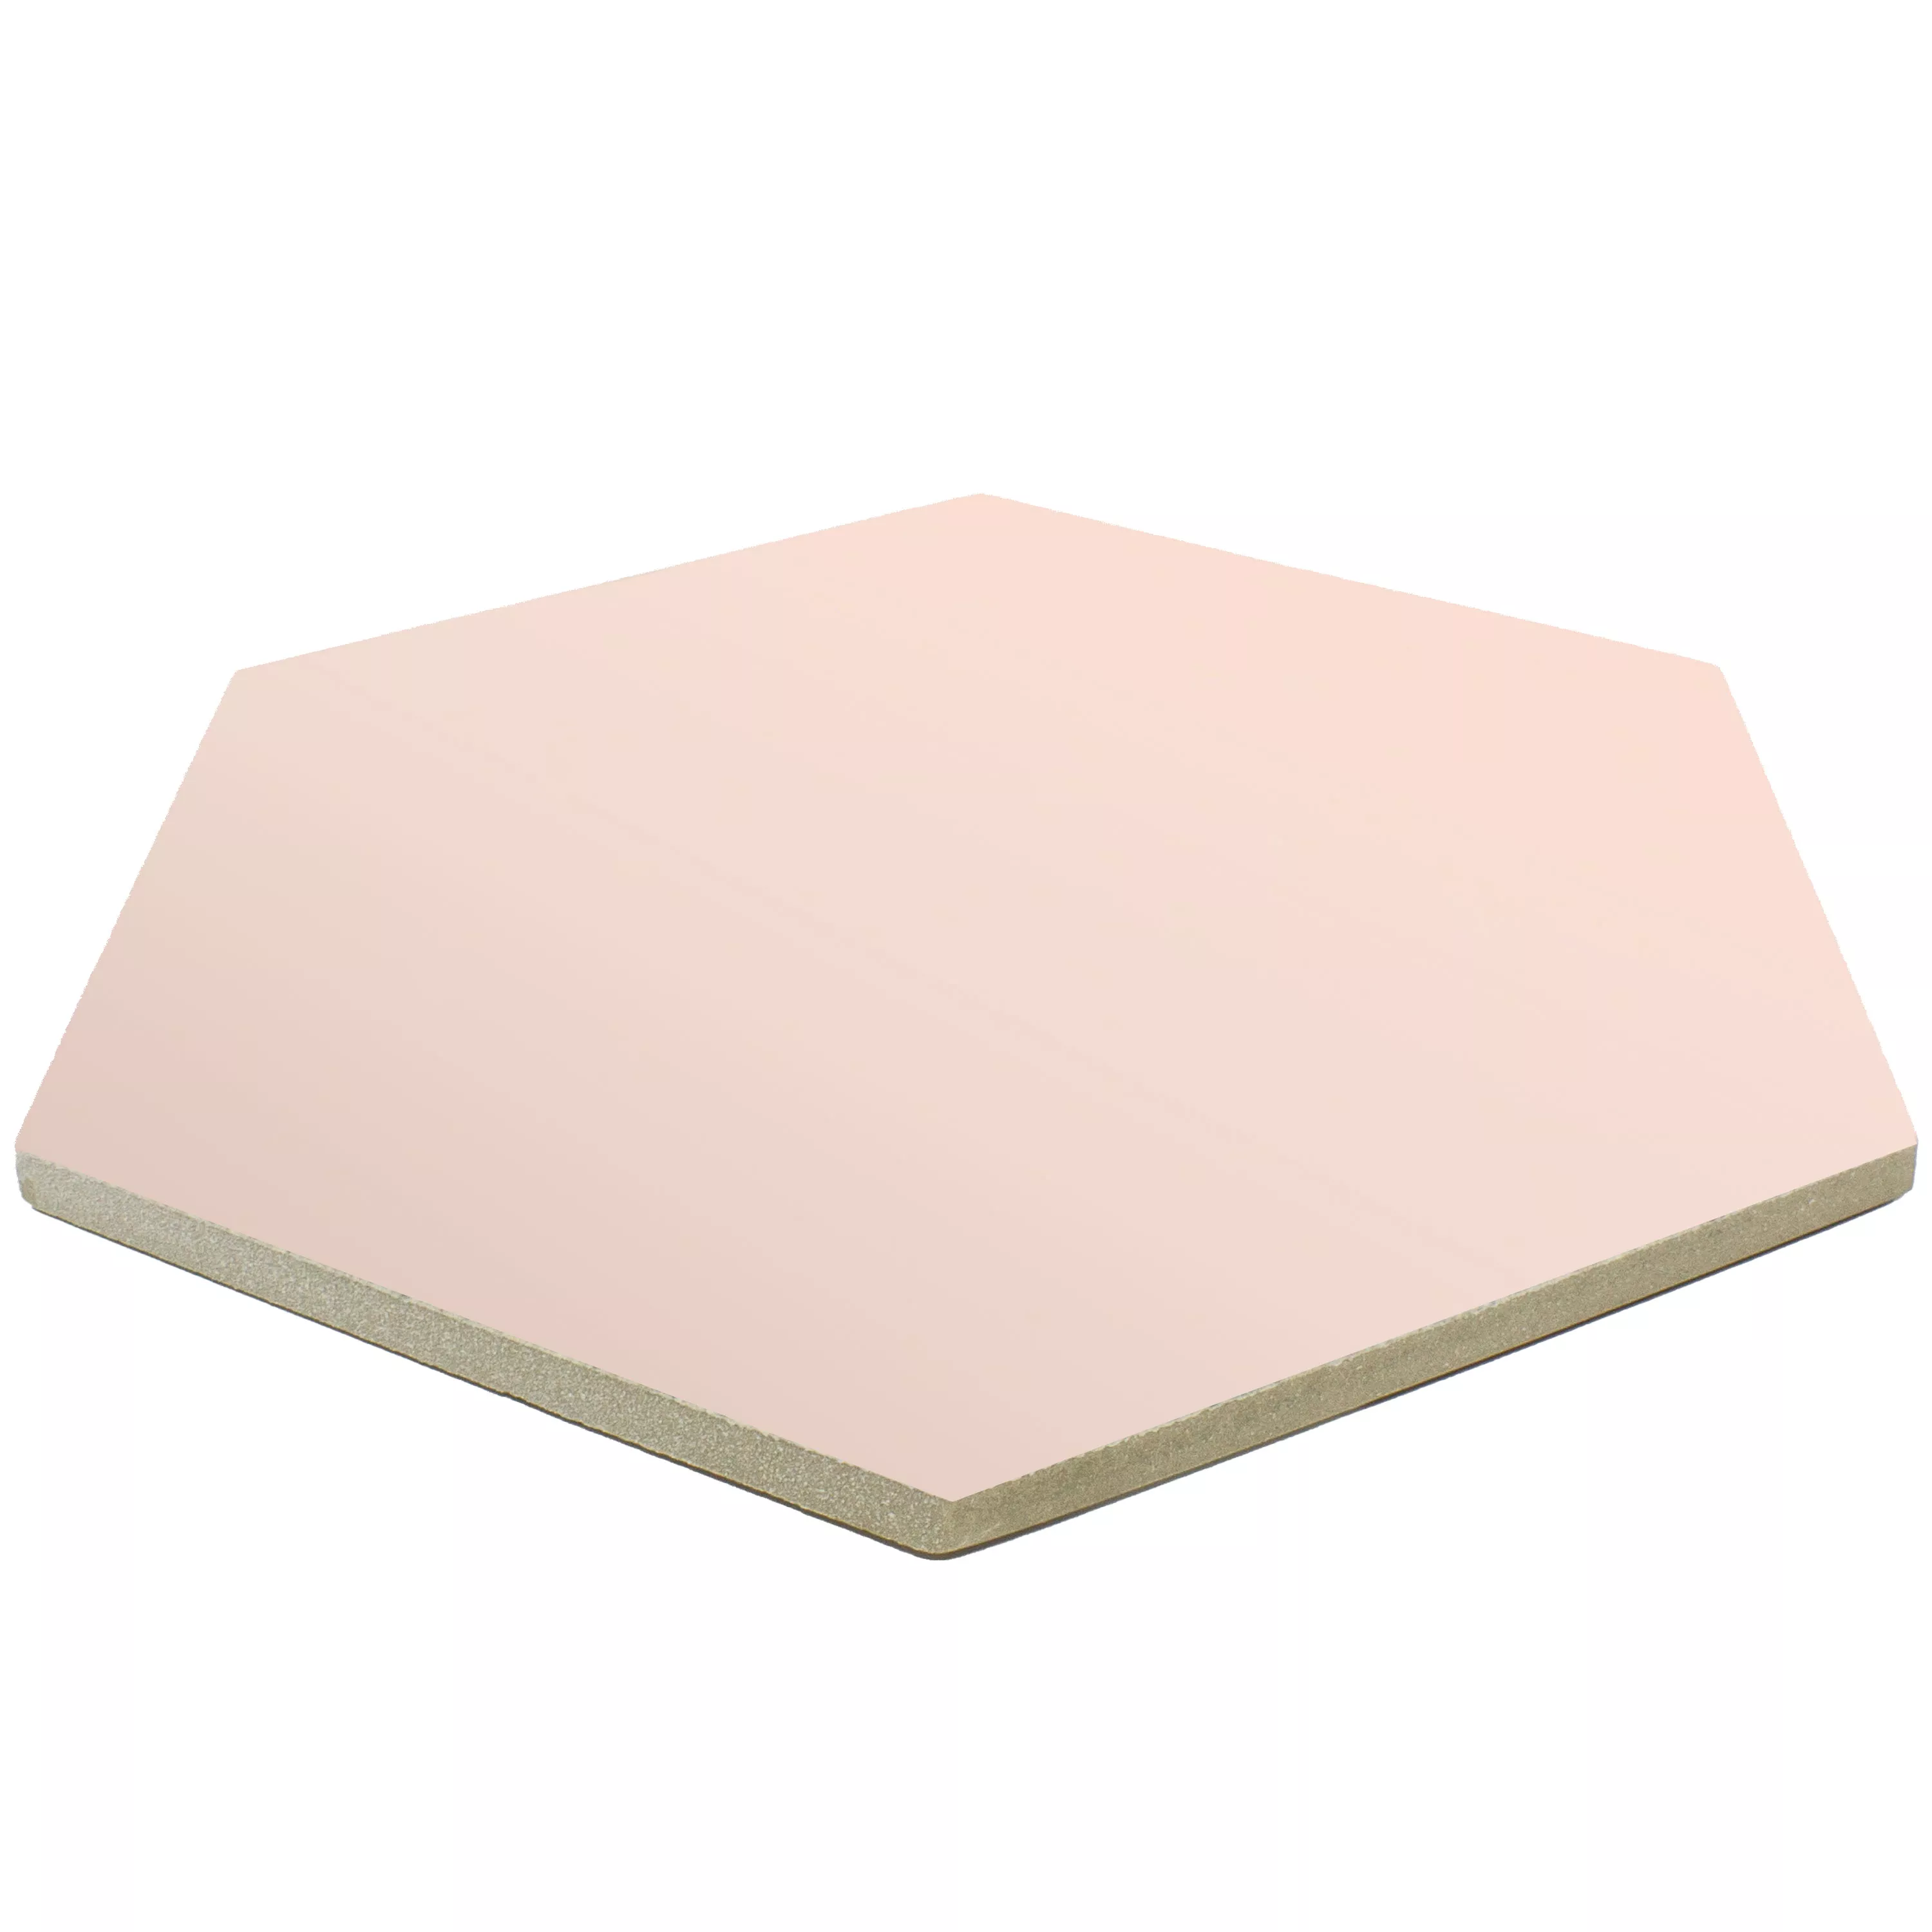 Sample Porcelain Stoneware Tiles Modena Hexagon Uni Pink Hexagon